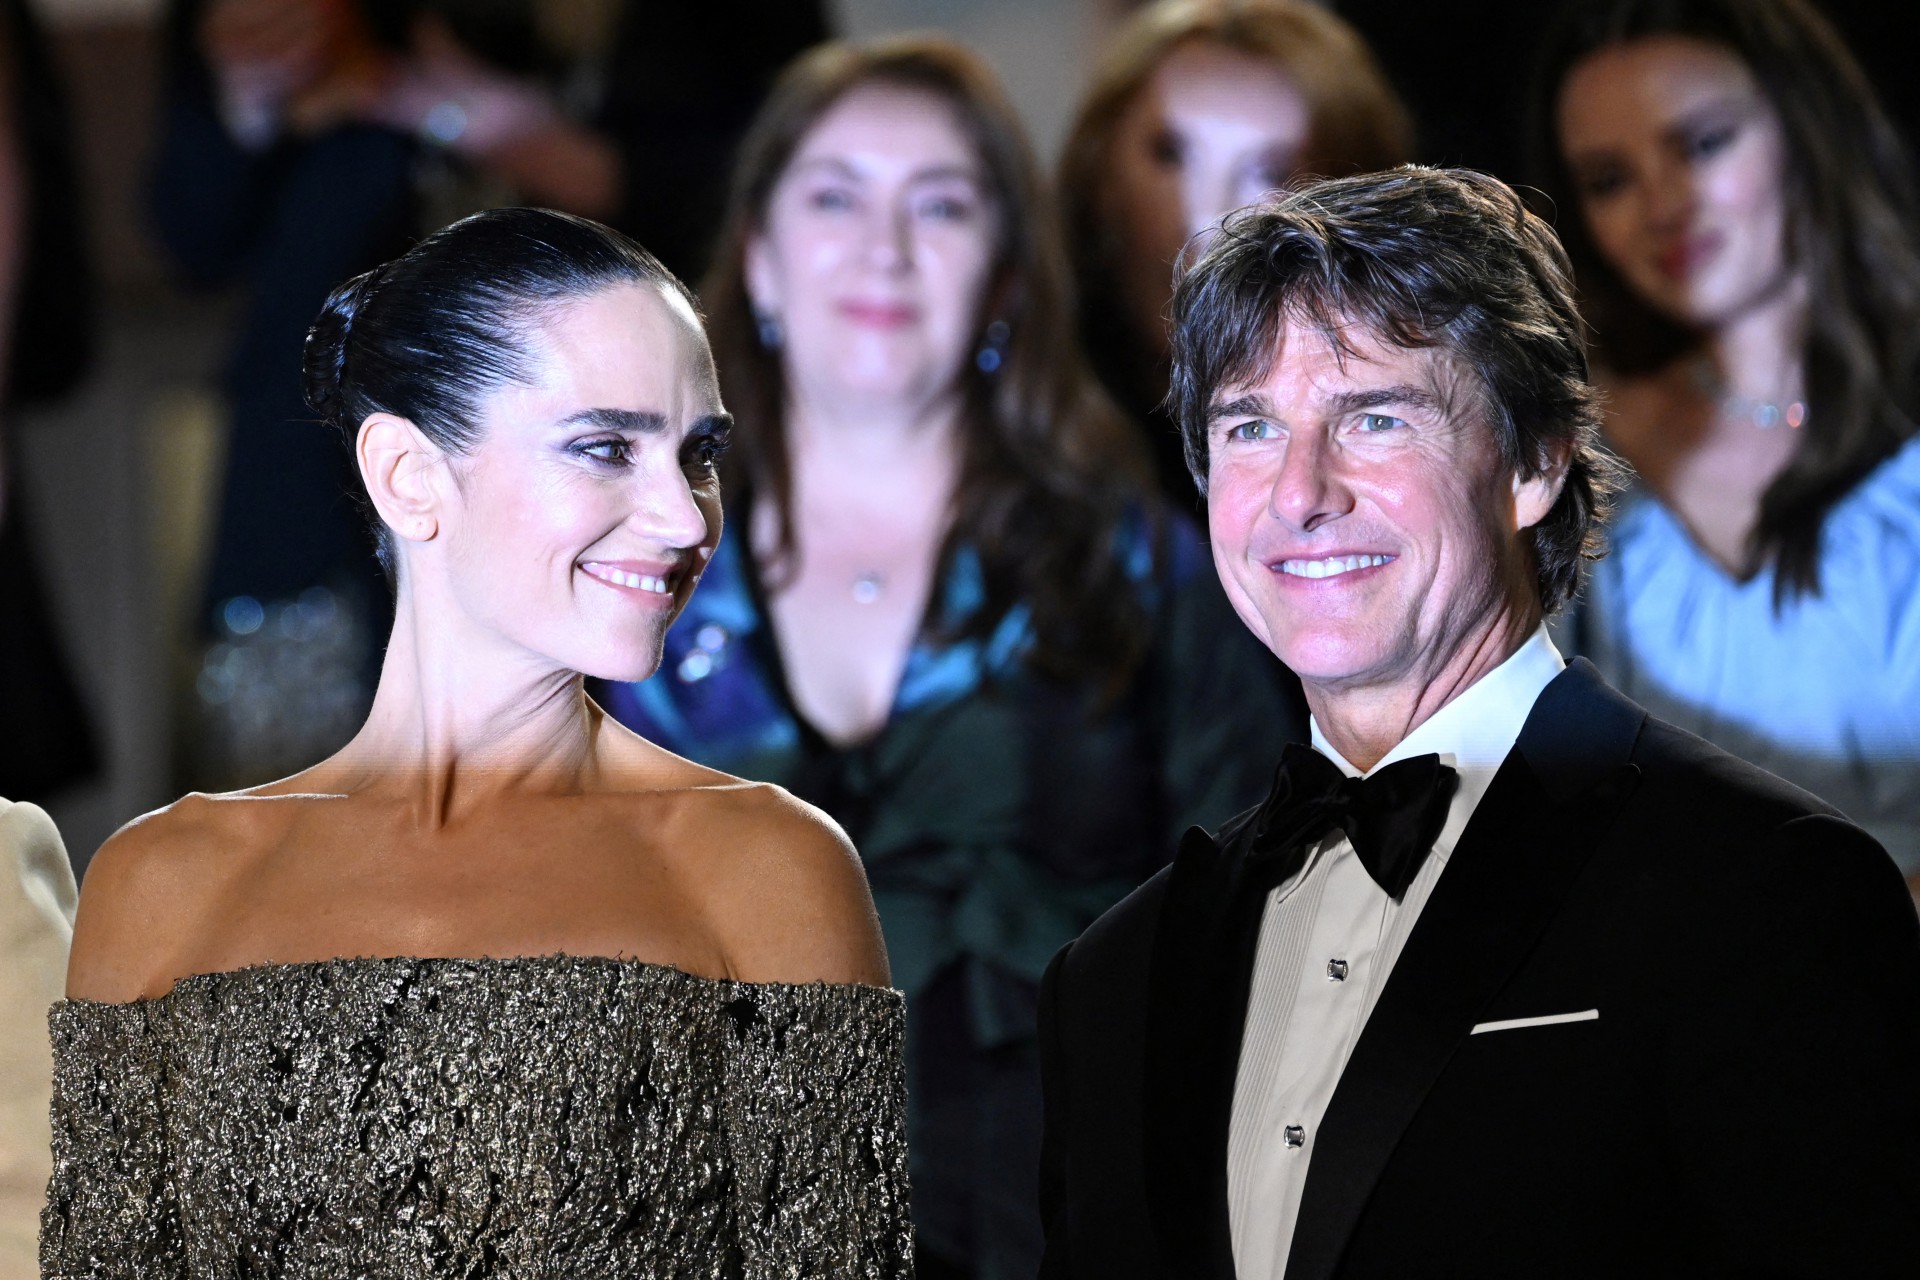 Tom Cruise e Jennifer Connelly dividiram holofotes (Foto: PATRICIA DE MELO MOREIRA / AFP)